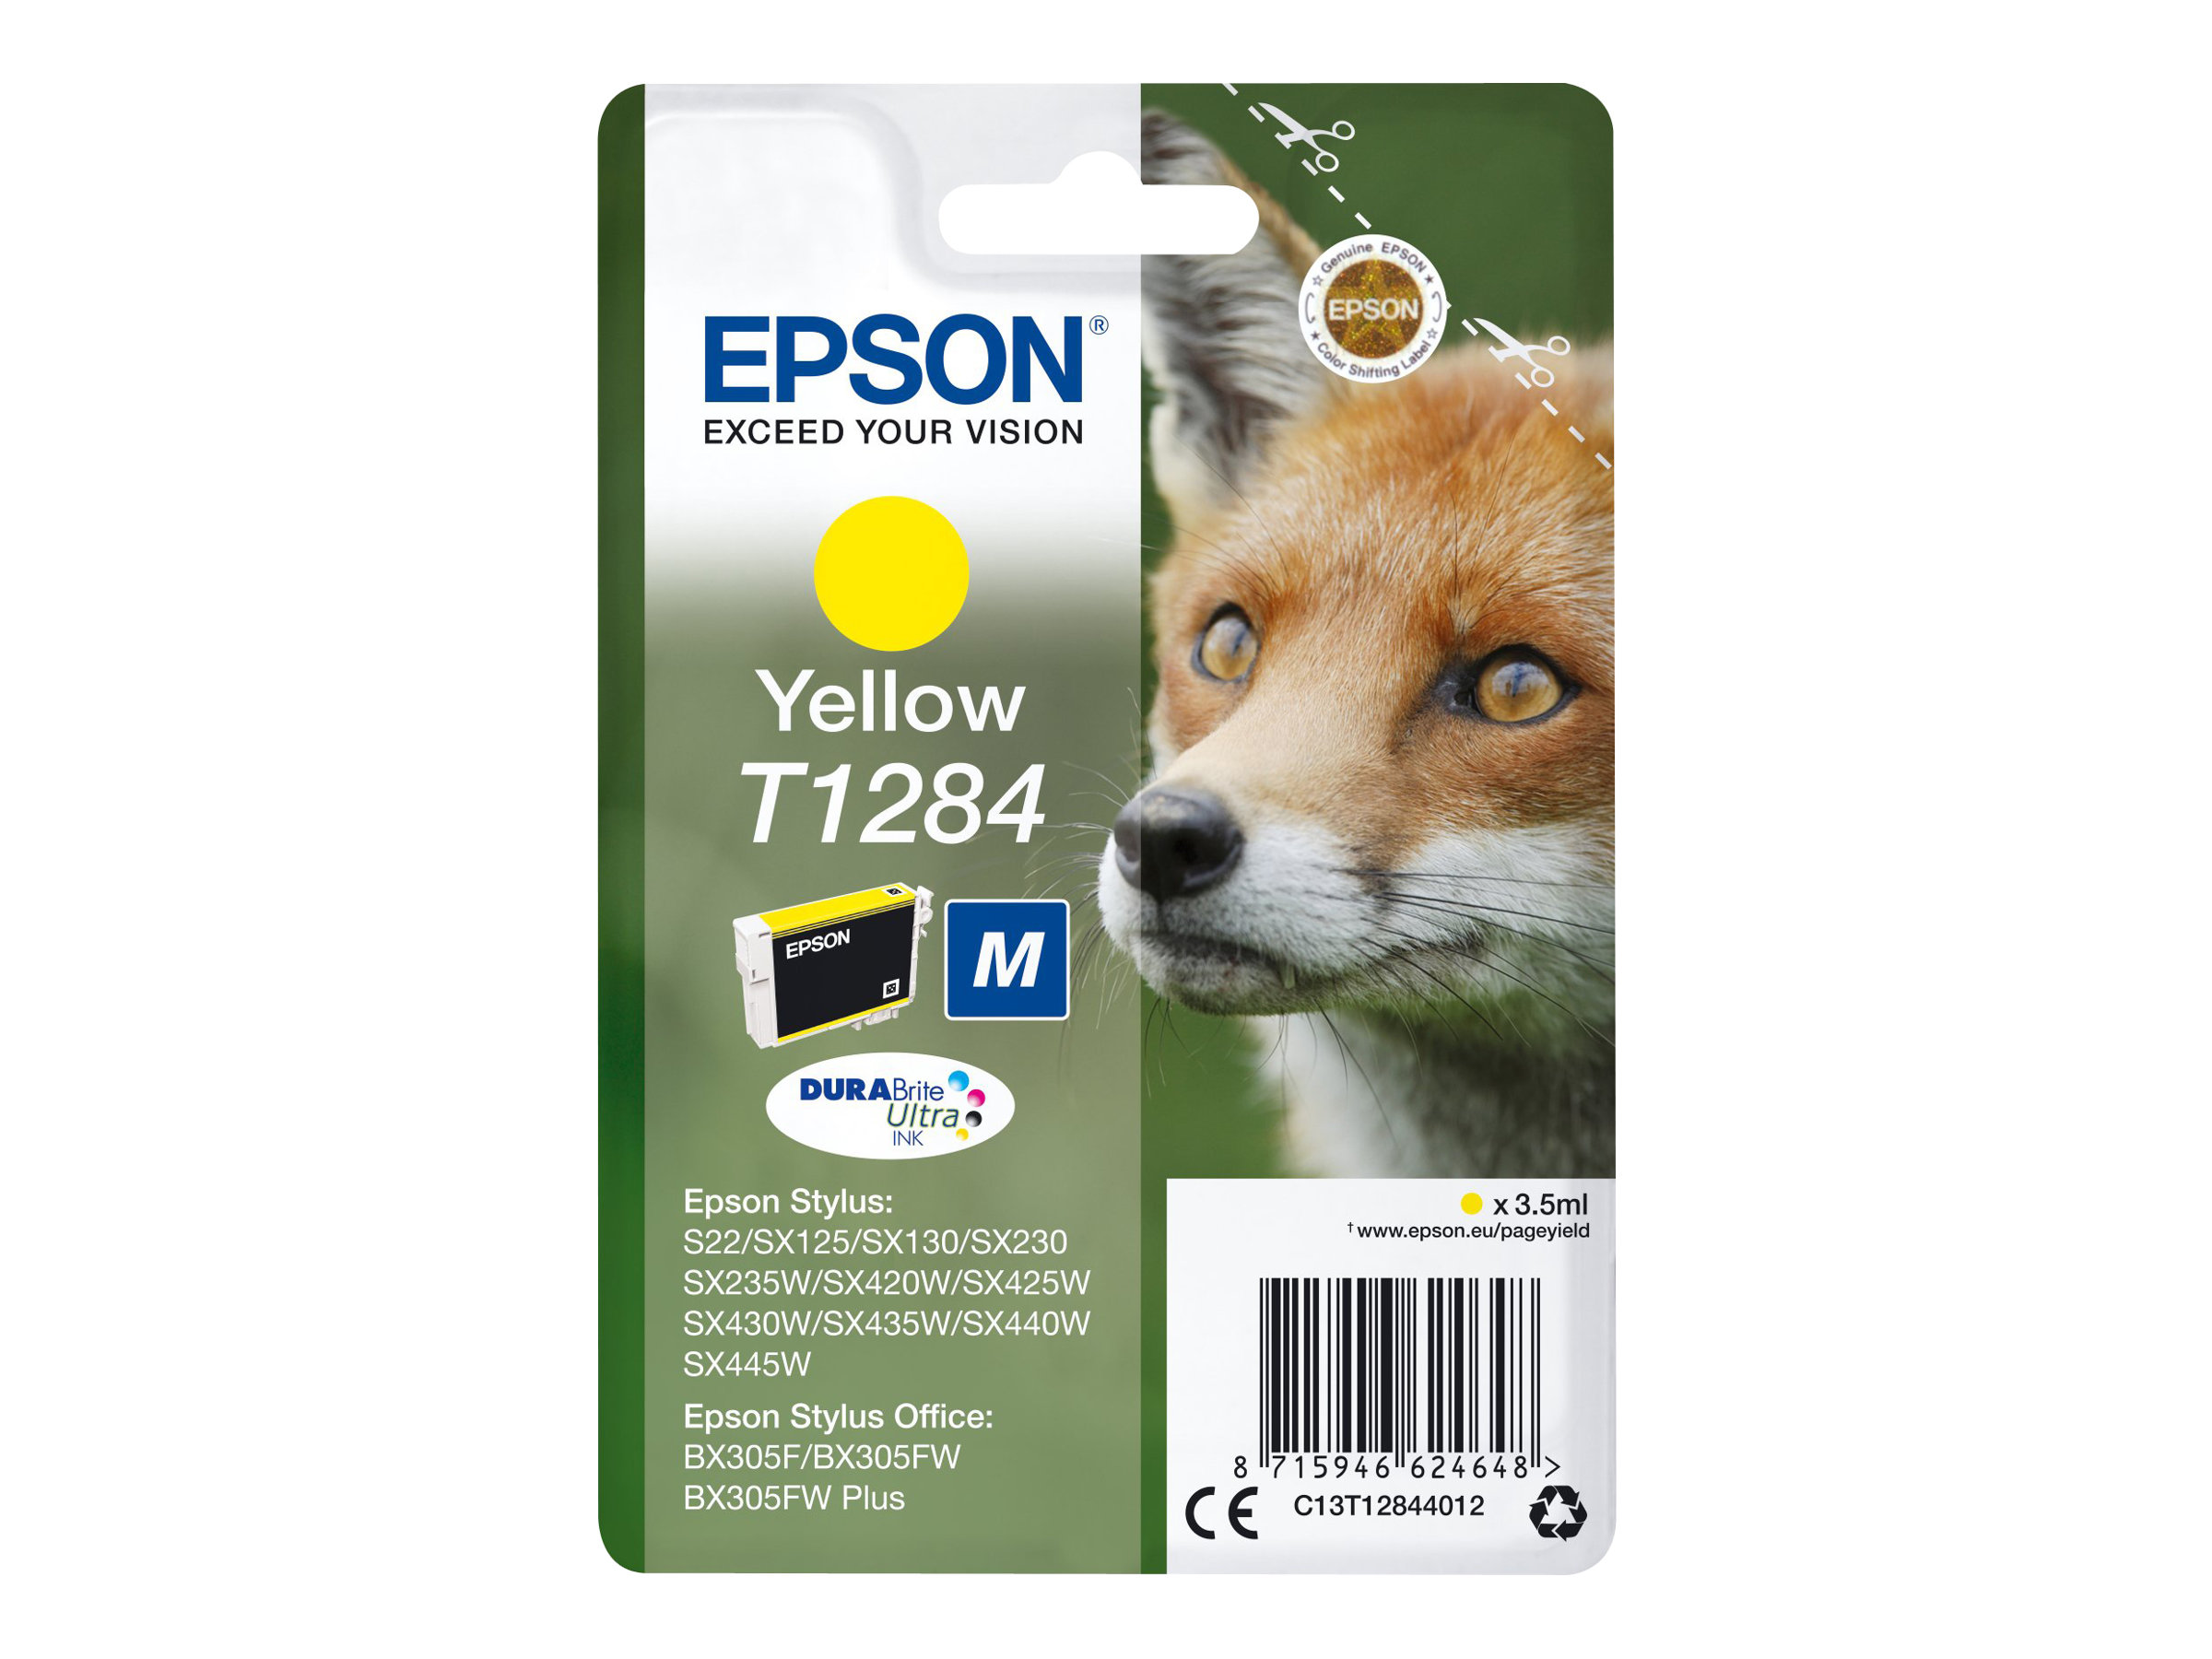 Epson T1284 - 3.5 ml - taille M - jaune - original - blister - cartouche d'encre - pour Stylus S22, SX130, SX230, SX235, SX430, SX435, SX438, SX440, SX445; Stylus Office BX305 - C13T12844012 - Cartouches d'imprimante